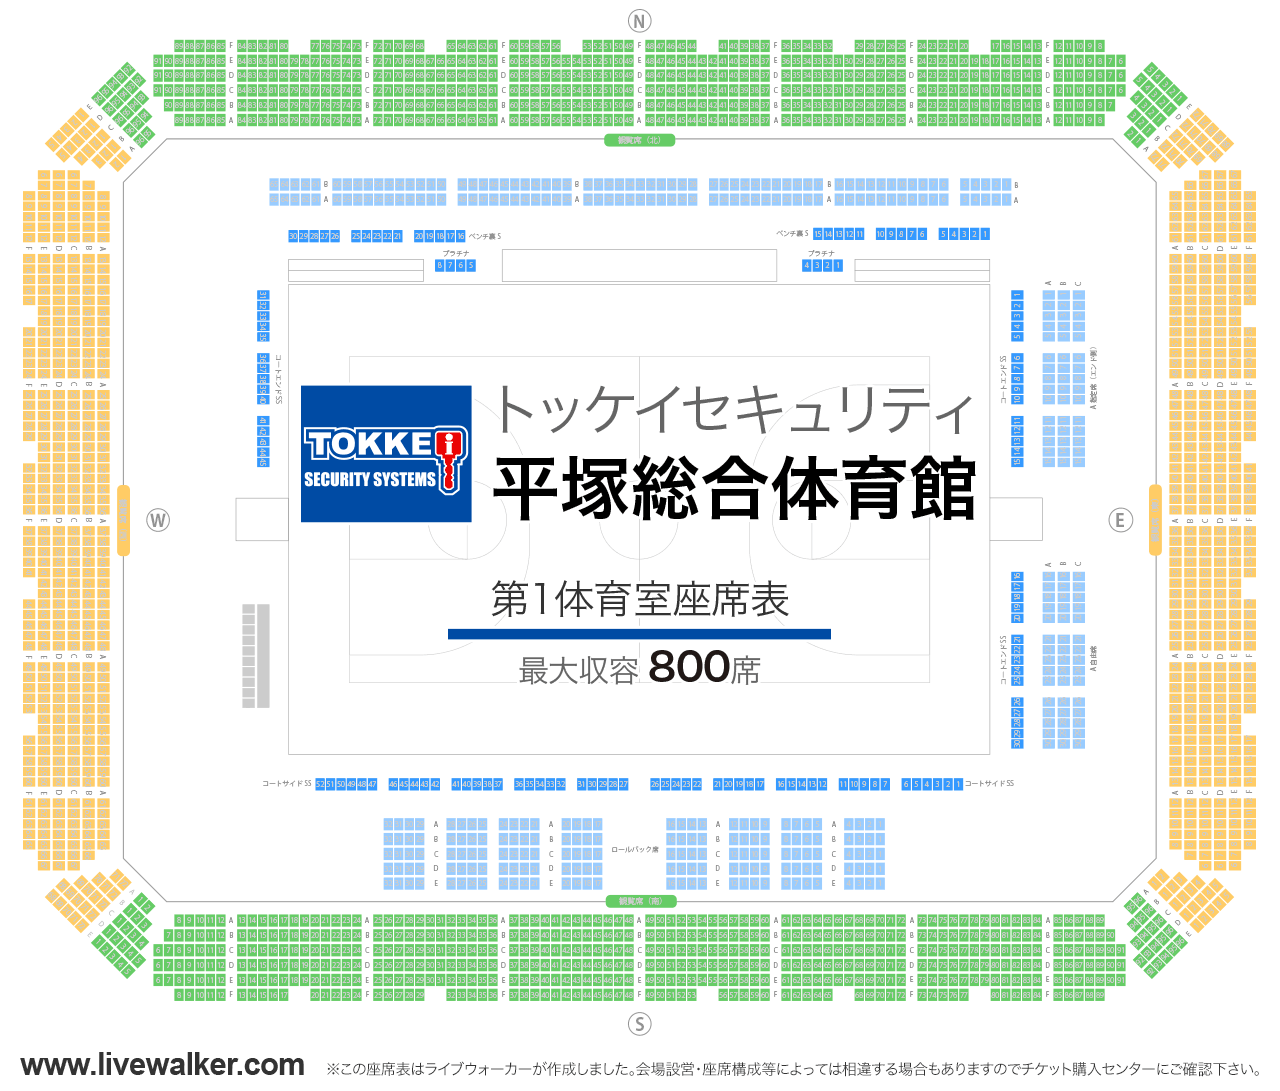 トッケイセキュリティ平塚総合体育館第1体育室の座席表